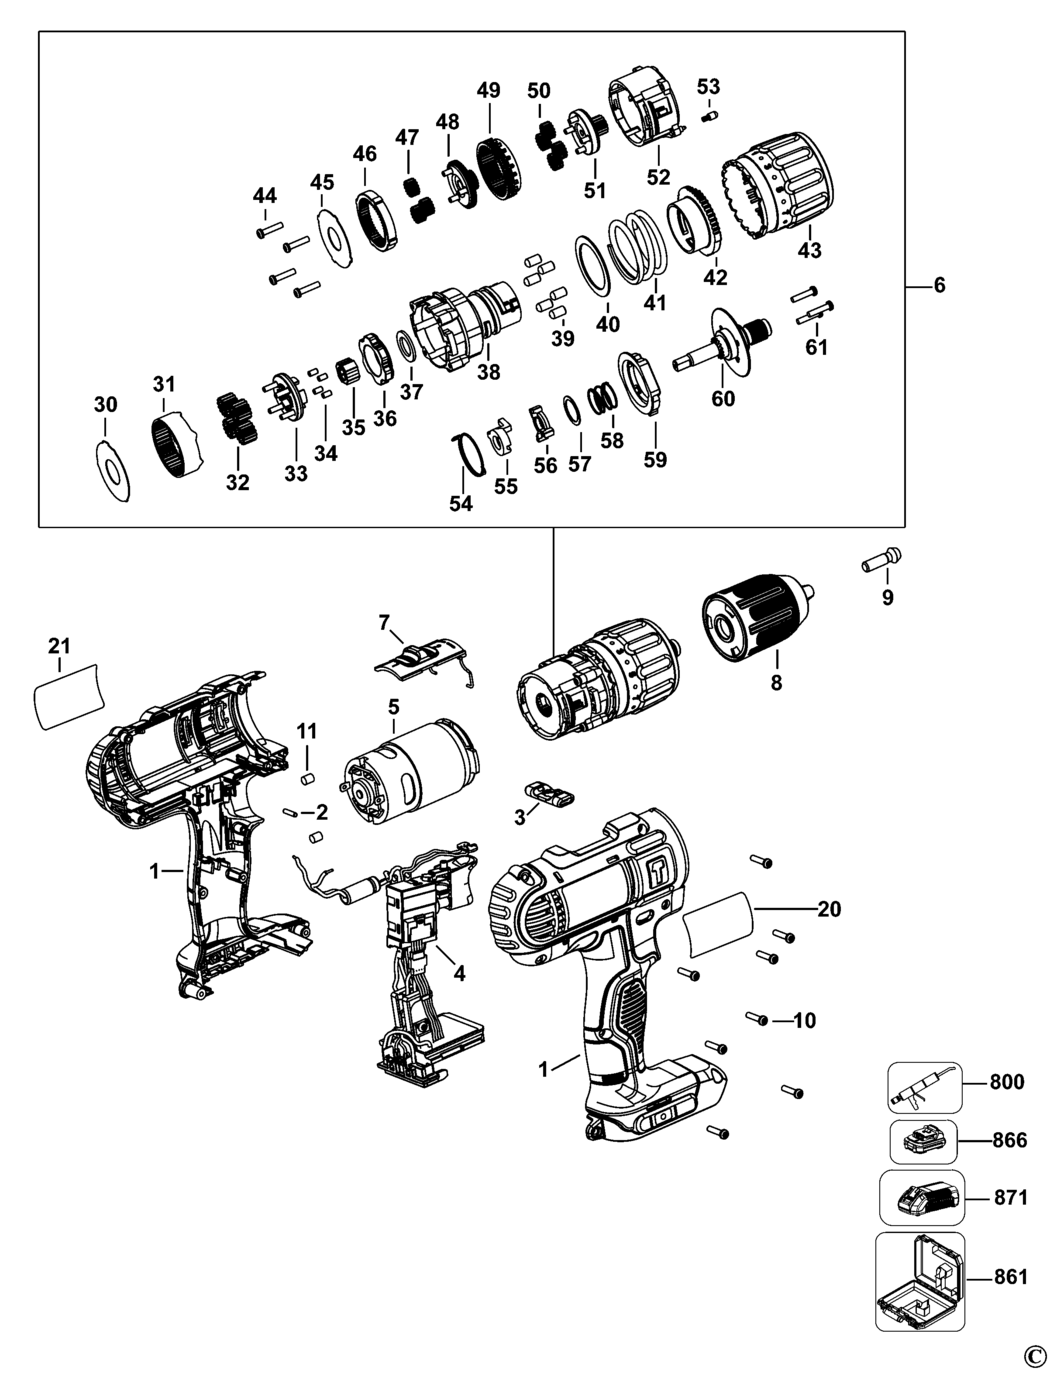 Dewalt DCD776 Type 1 Cordless Drill Spare Parts